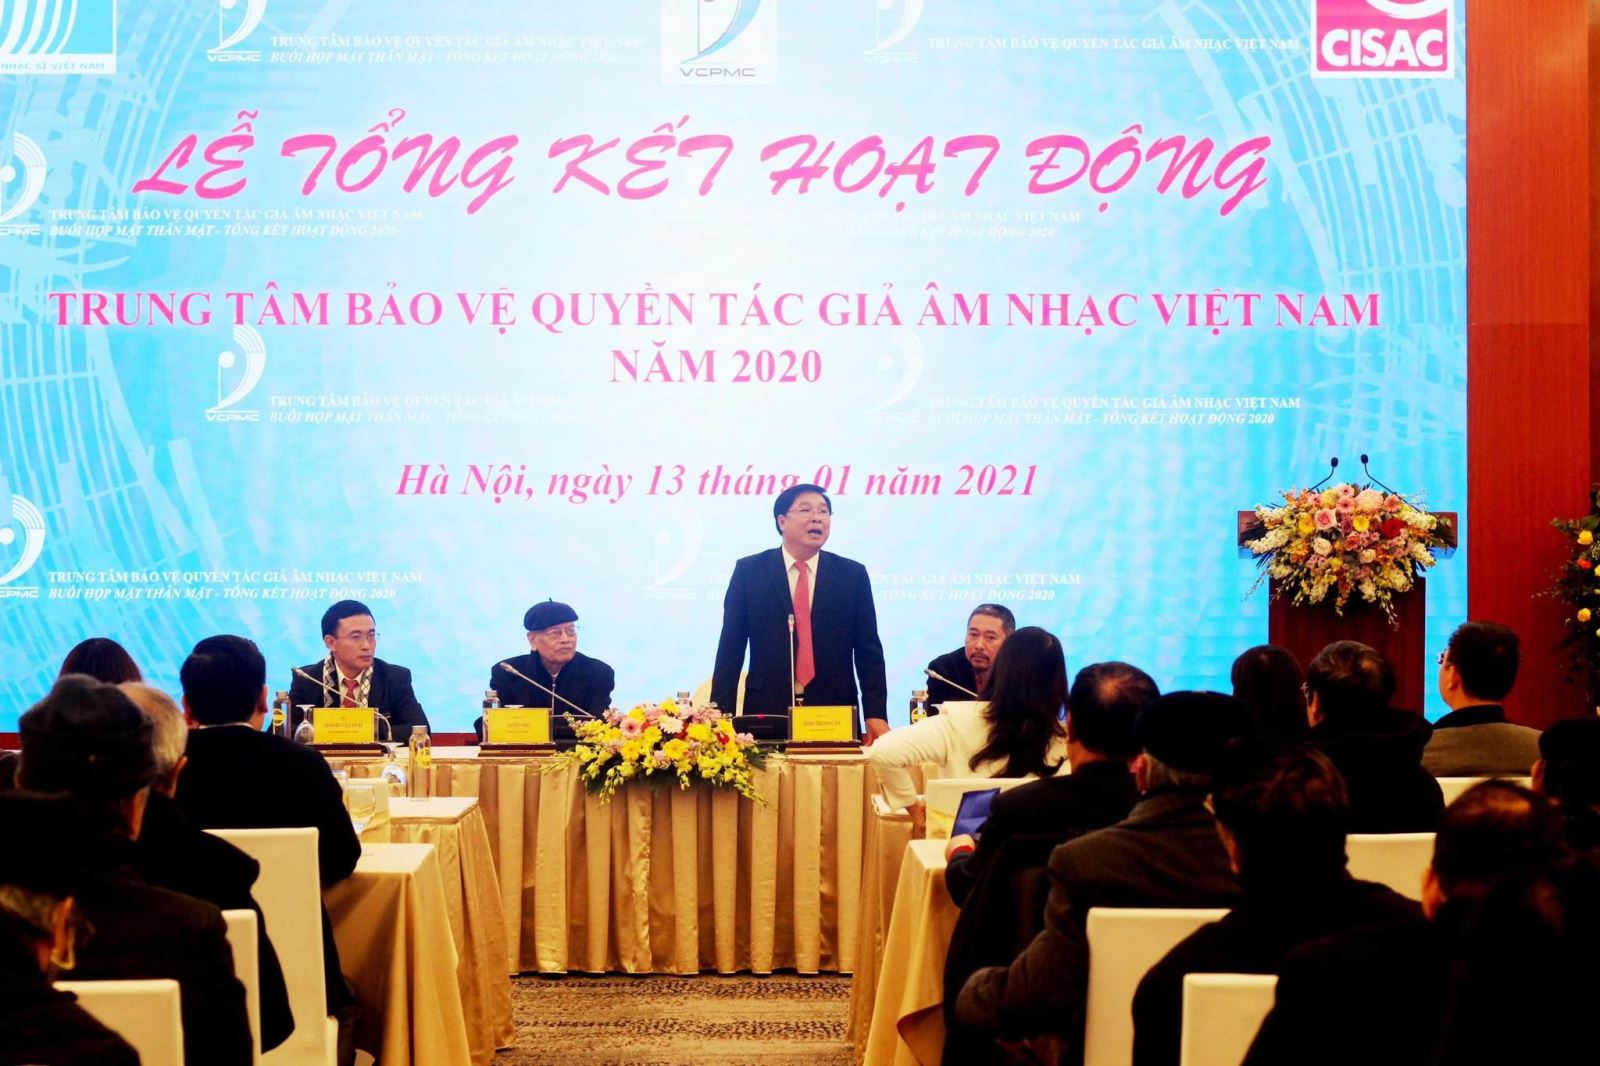 Nhạc sỹ Đinh Trung Cẩn, Tổng Giám đốc Trung tâm Bảo vệ quyền tác giả âm nhạc Việt Nam phát biểu tại Lễ tổng kết hoạt động năm 2020.